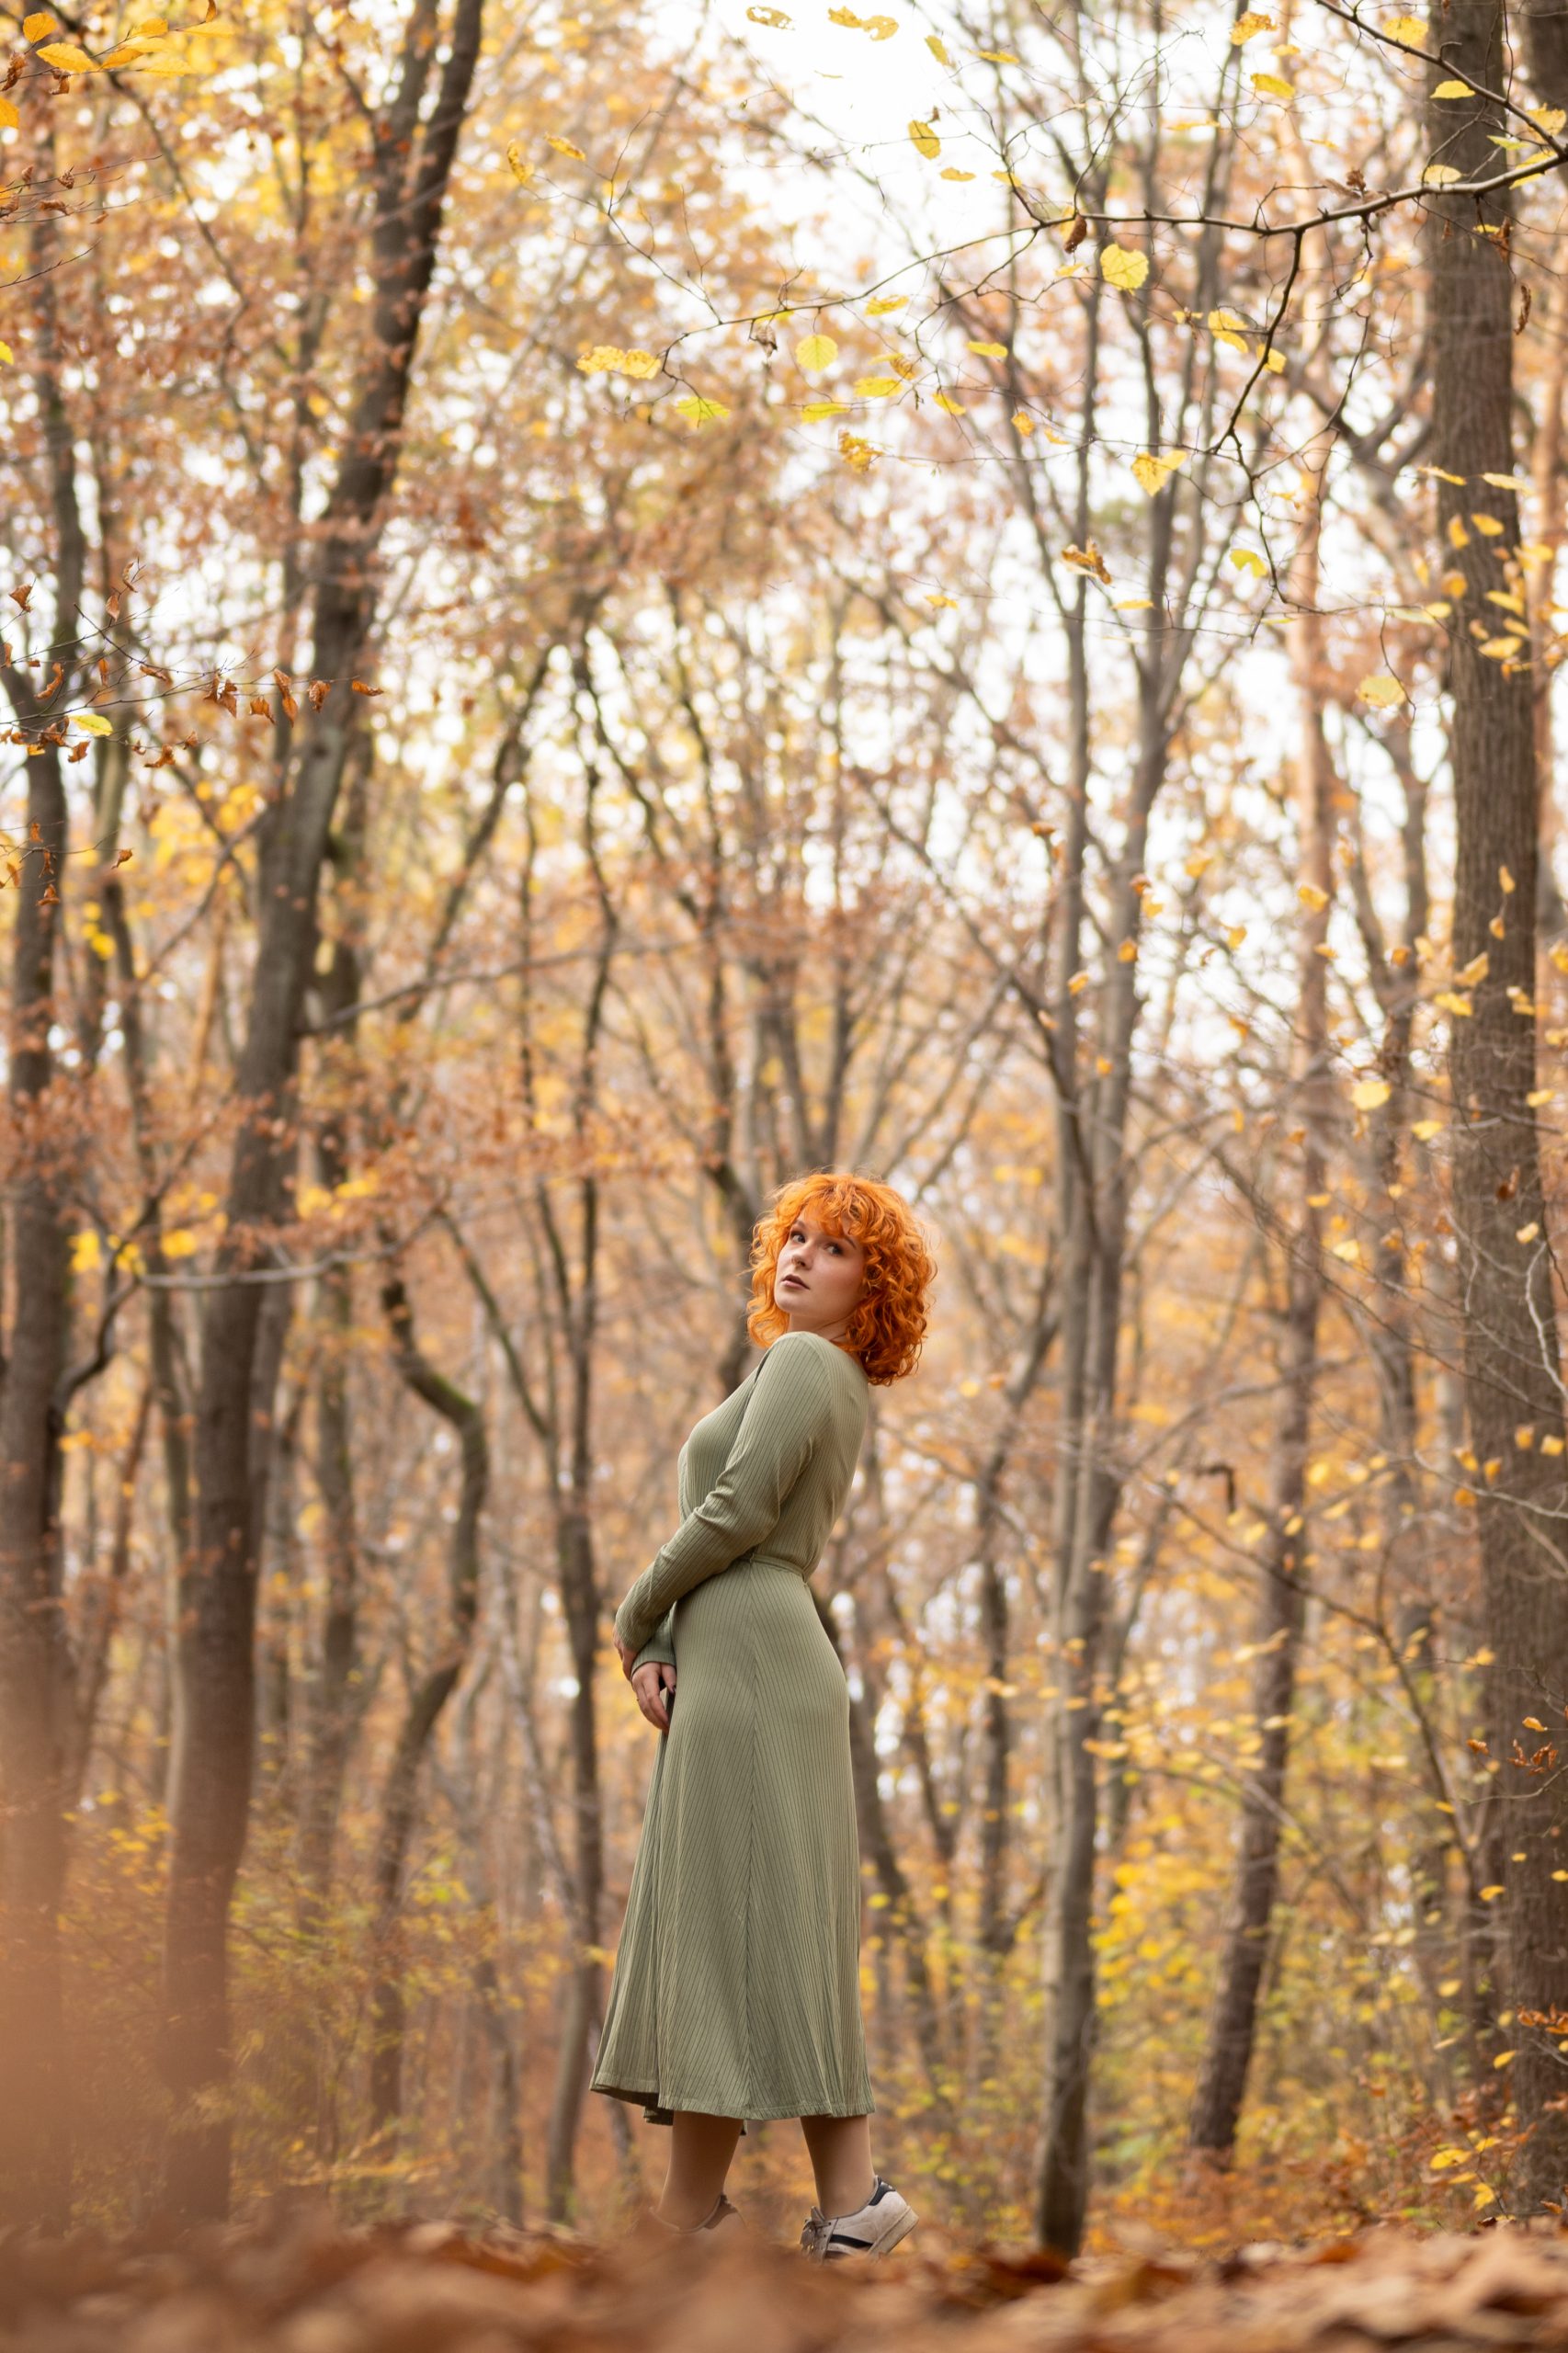 Ruda dziewczyna stoi na ścieżce leśnej, w tle drzewa w jesiennych kolorach